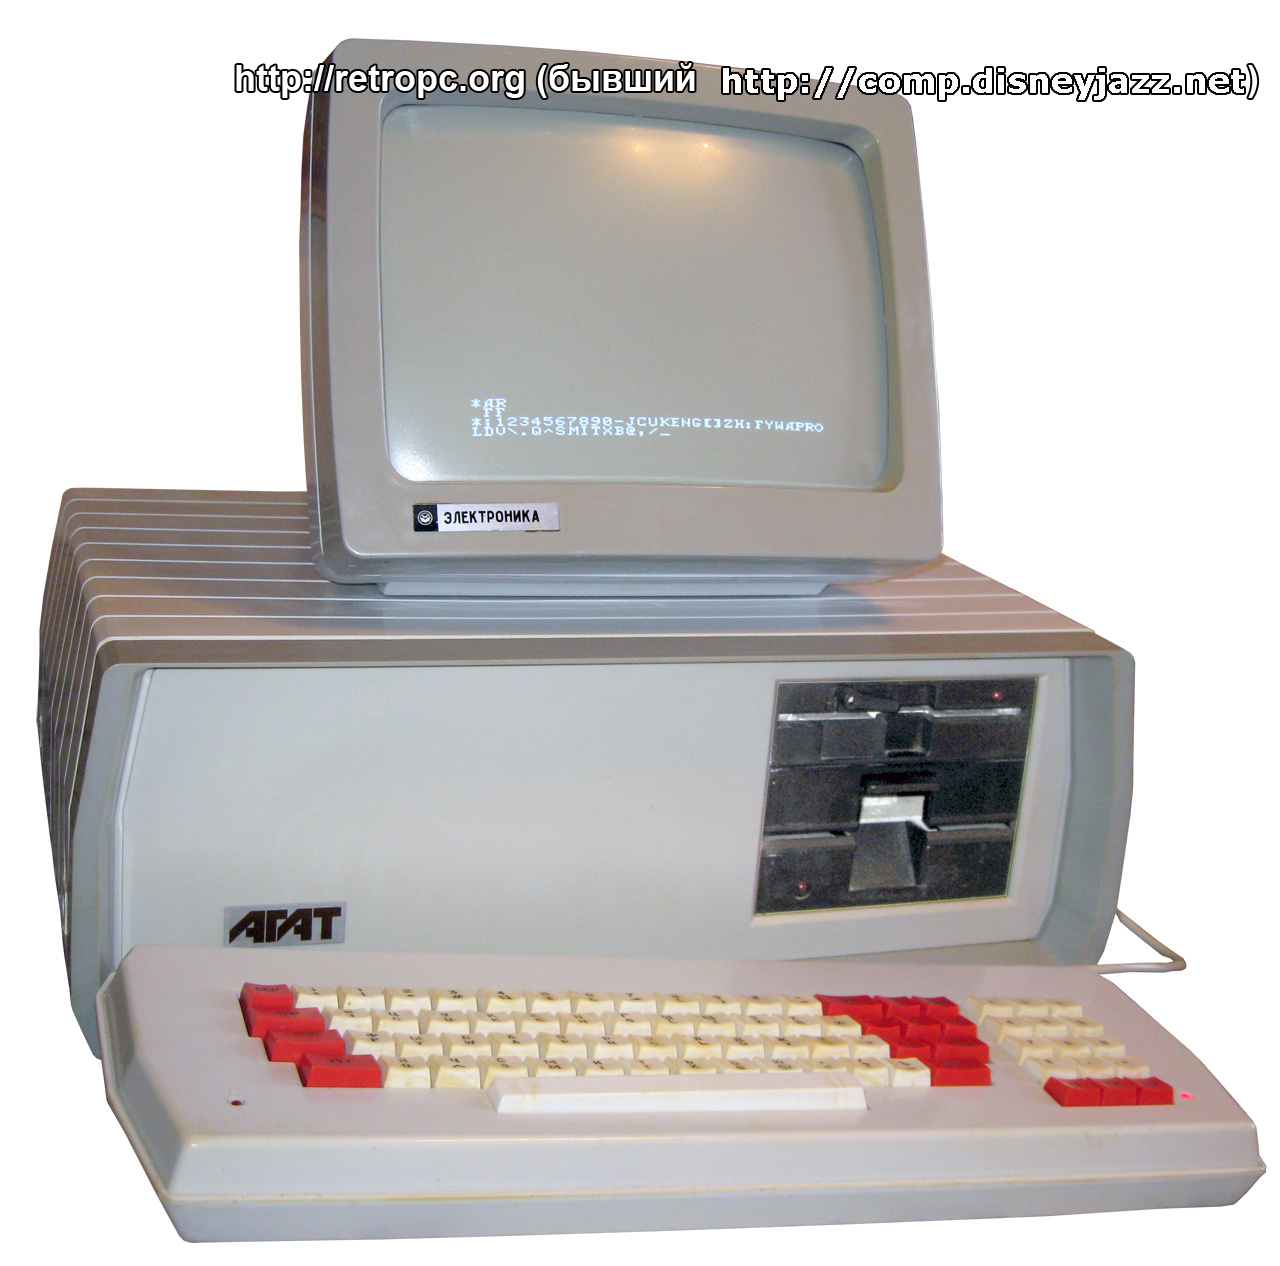 Компьютер Агат 9 в режиме клавиатурного монитора